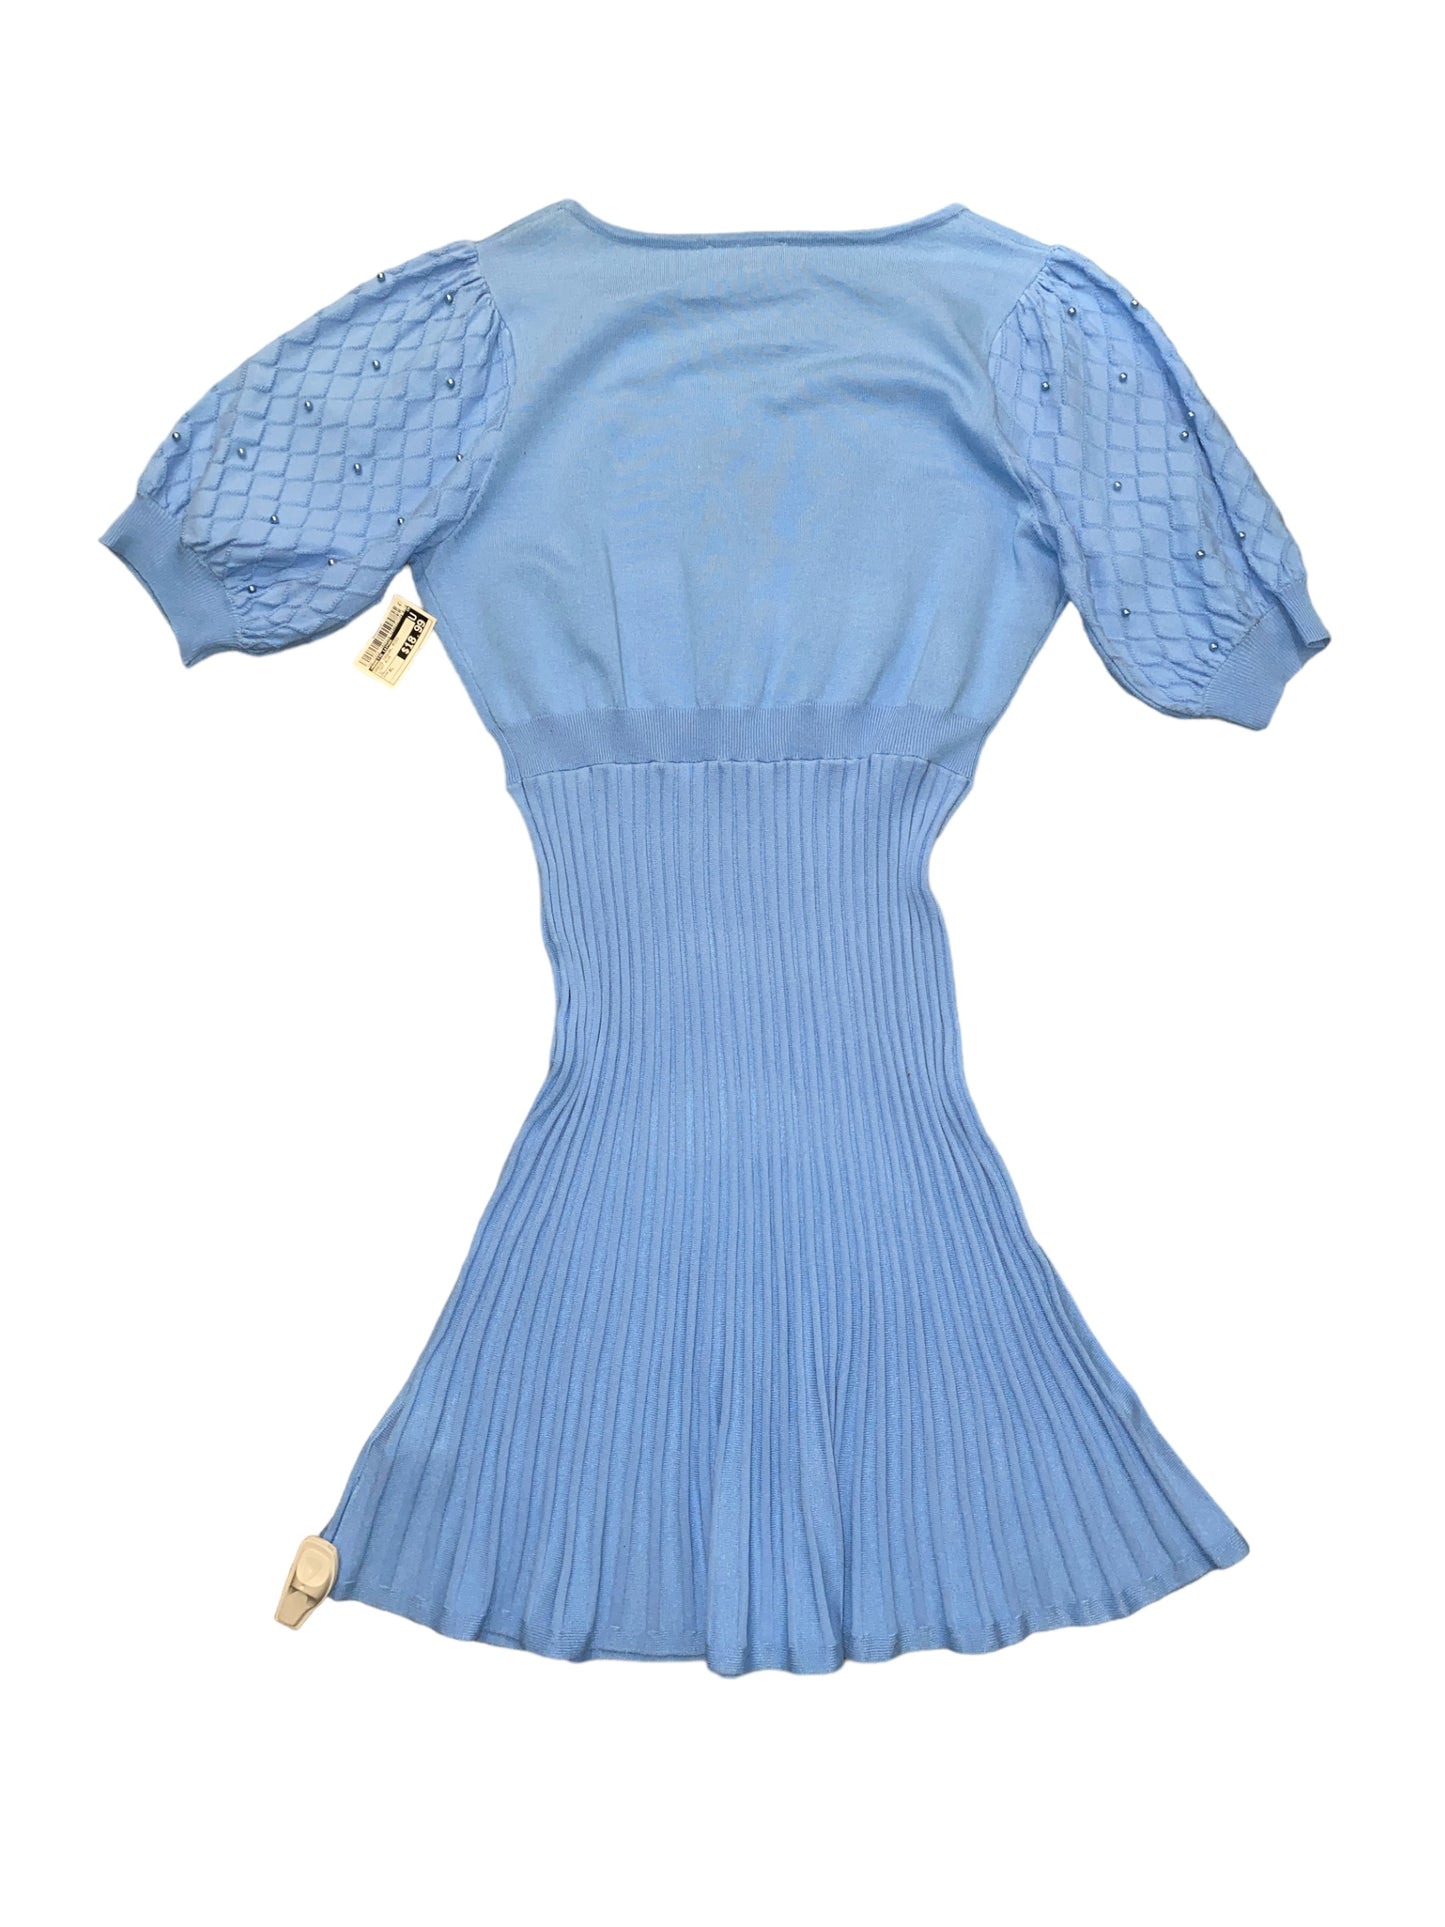 Dress Casual Midi By Nanette Lepore  Size: Xl